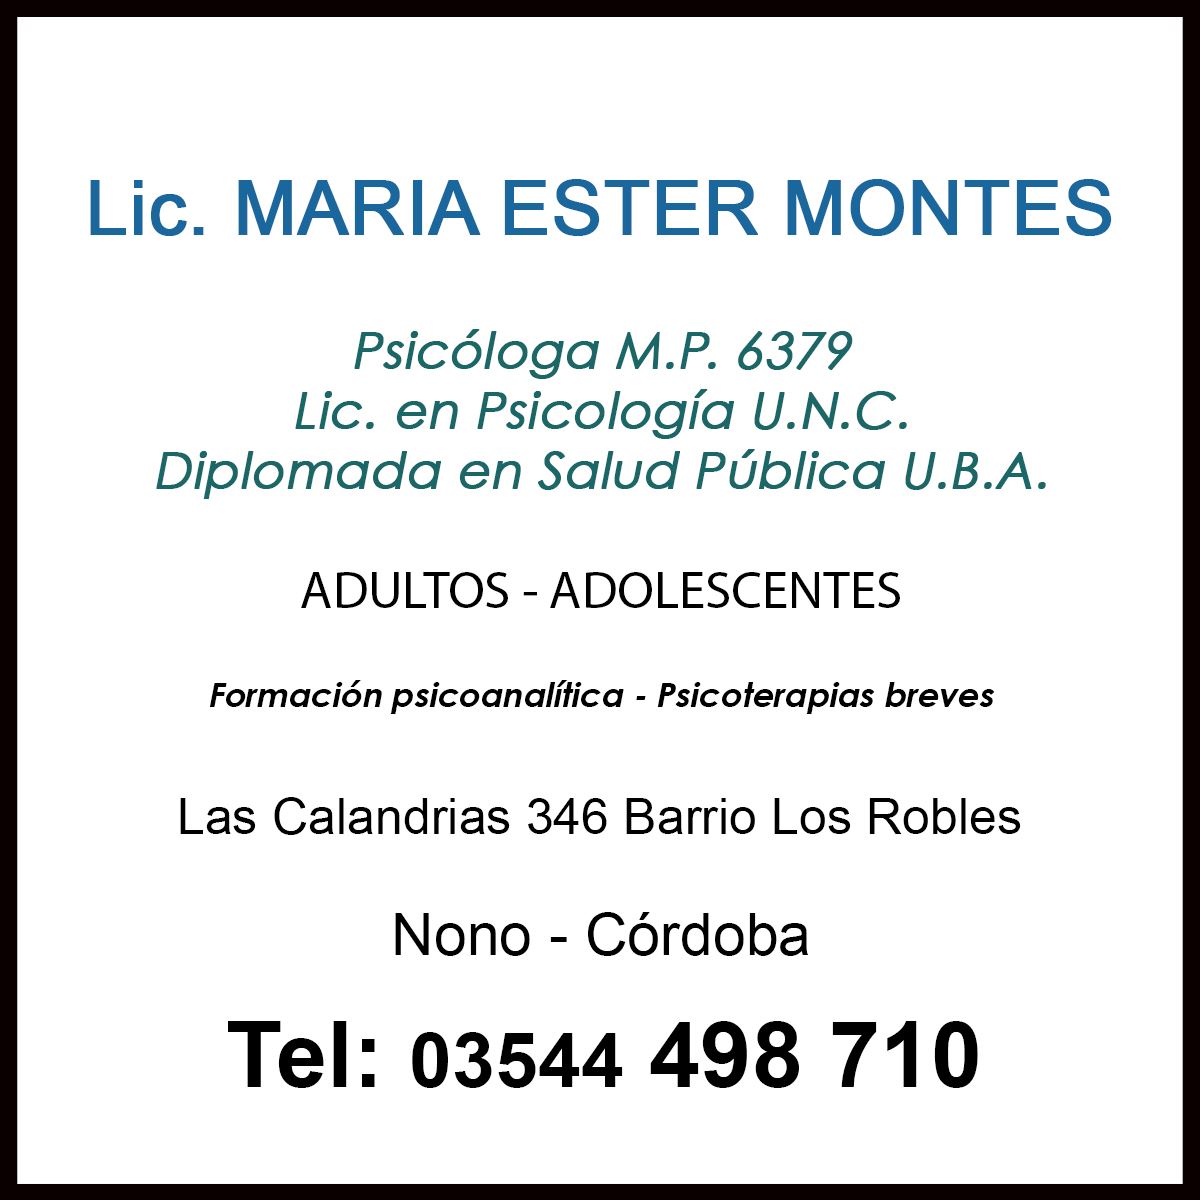 Lic. María Ester Montes - InfoGuia Traslasierra - Psicóloga M.P. 6379 Lic. en Psicología U.N.C. Diplomada en Salud Pública U.B.A. Formación psicoanalítica - Psicoterapias breves